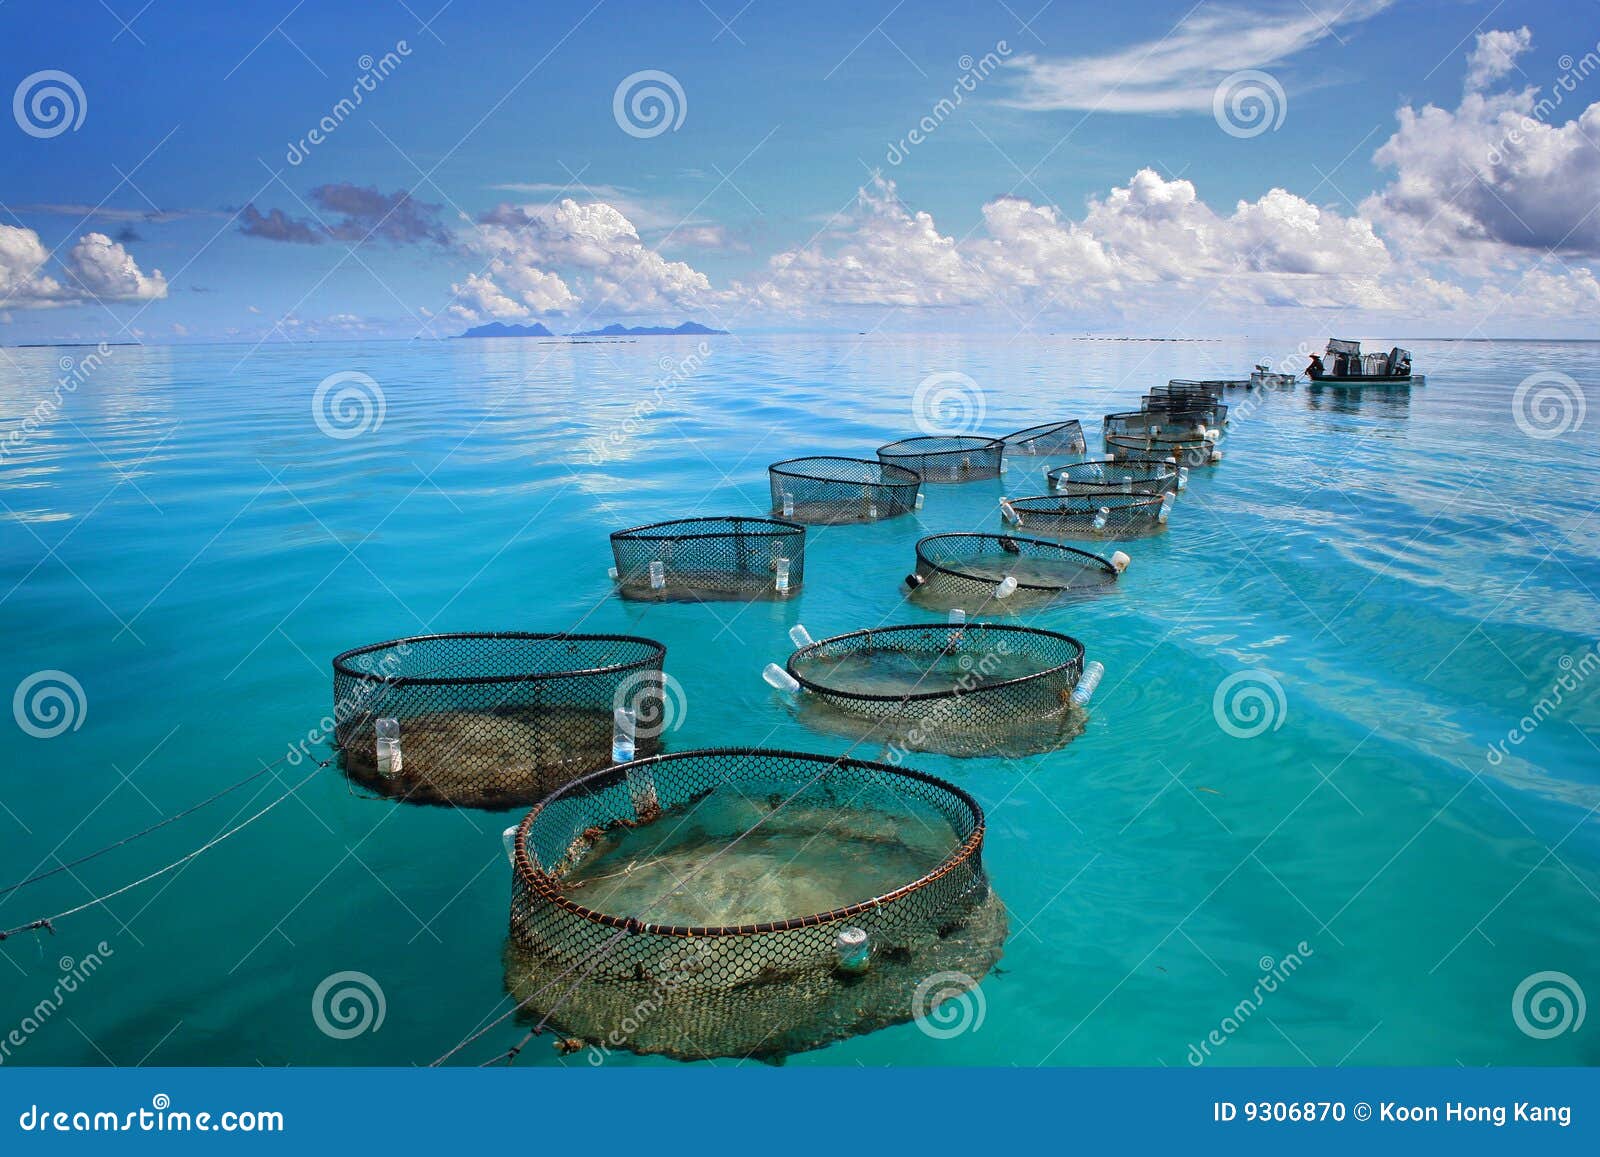 marine fishery on turquoise sea